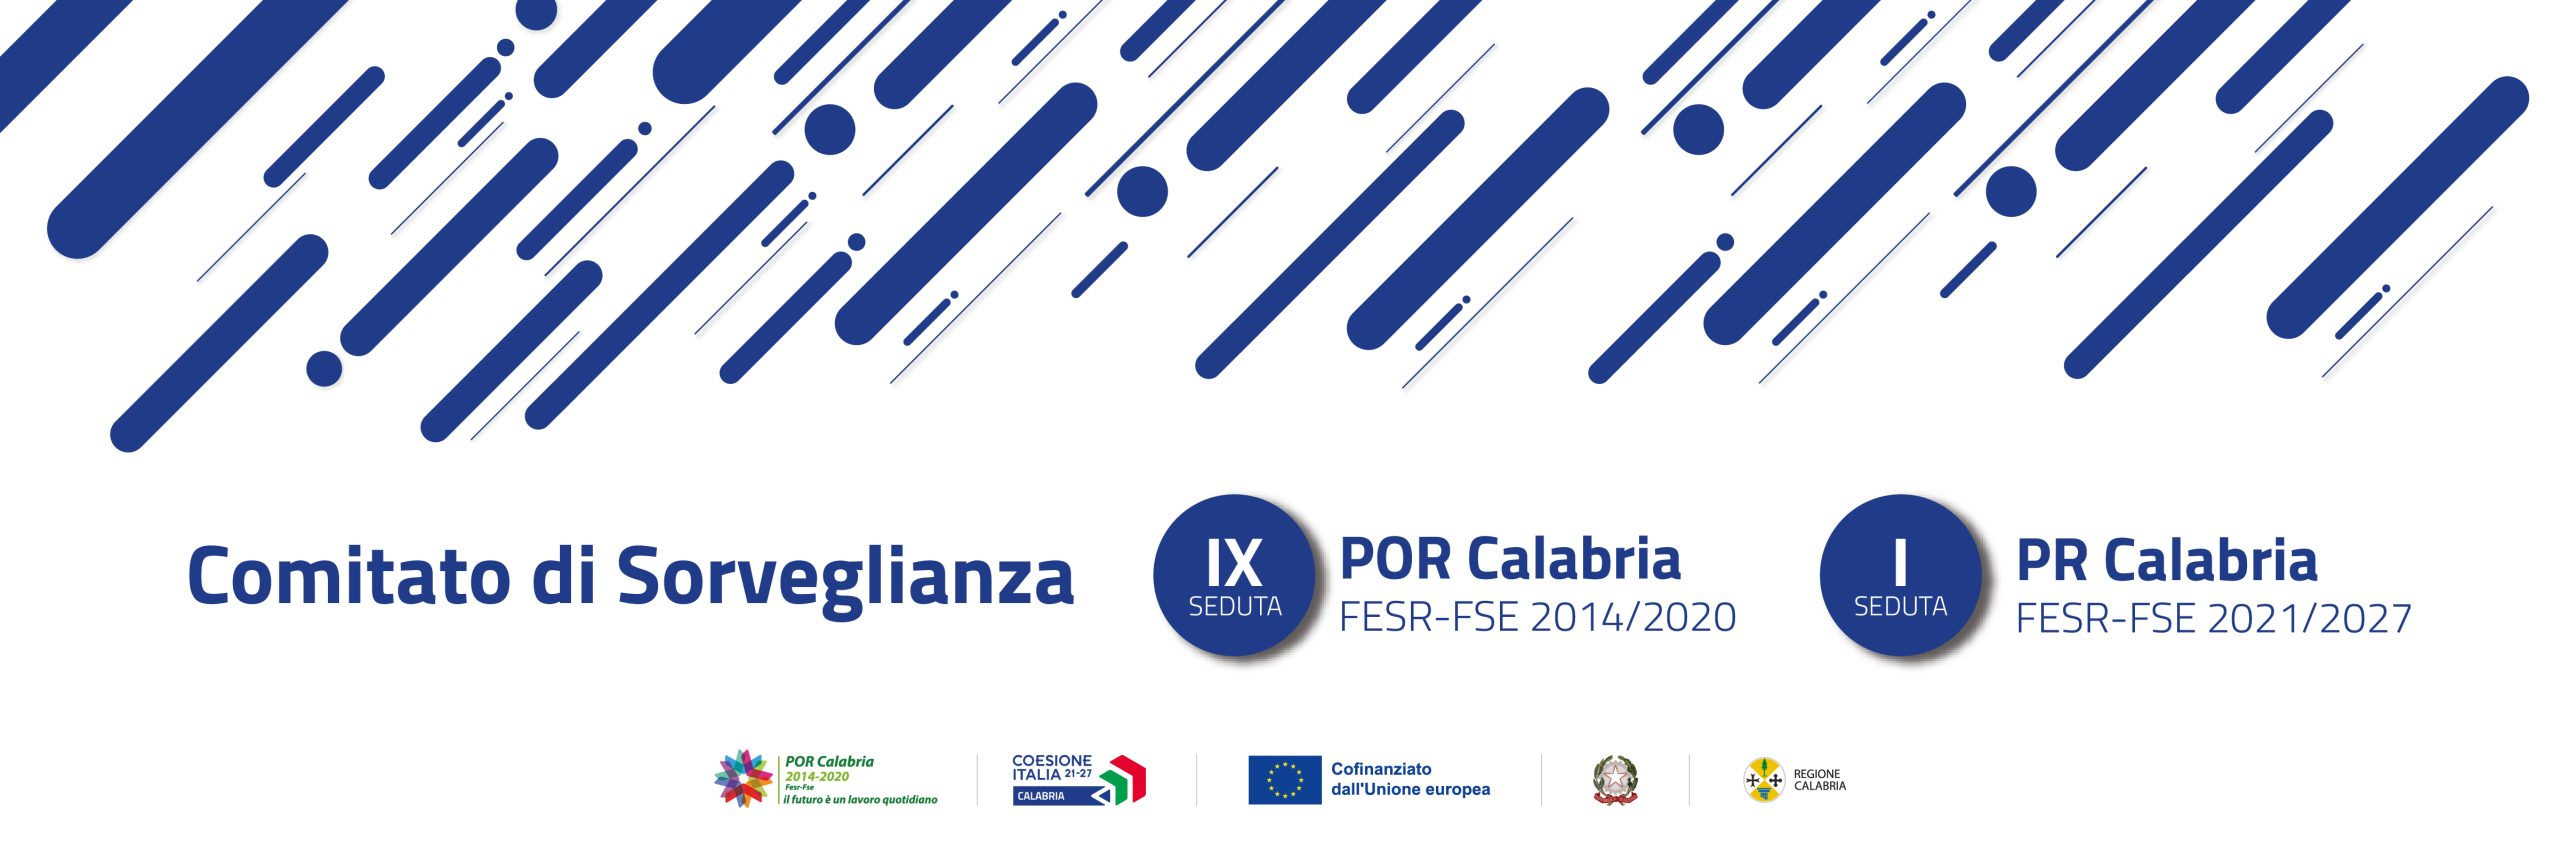 I Comitato di Sorveglianza del PR 2127 e IX Comitato di Sorveglianza del POR Calabria 14/20